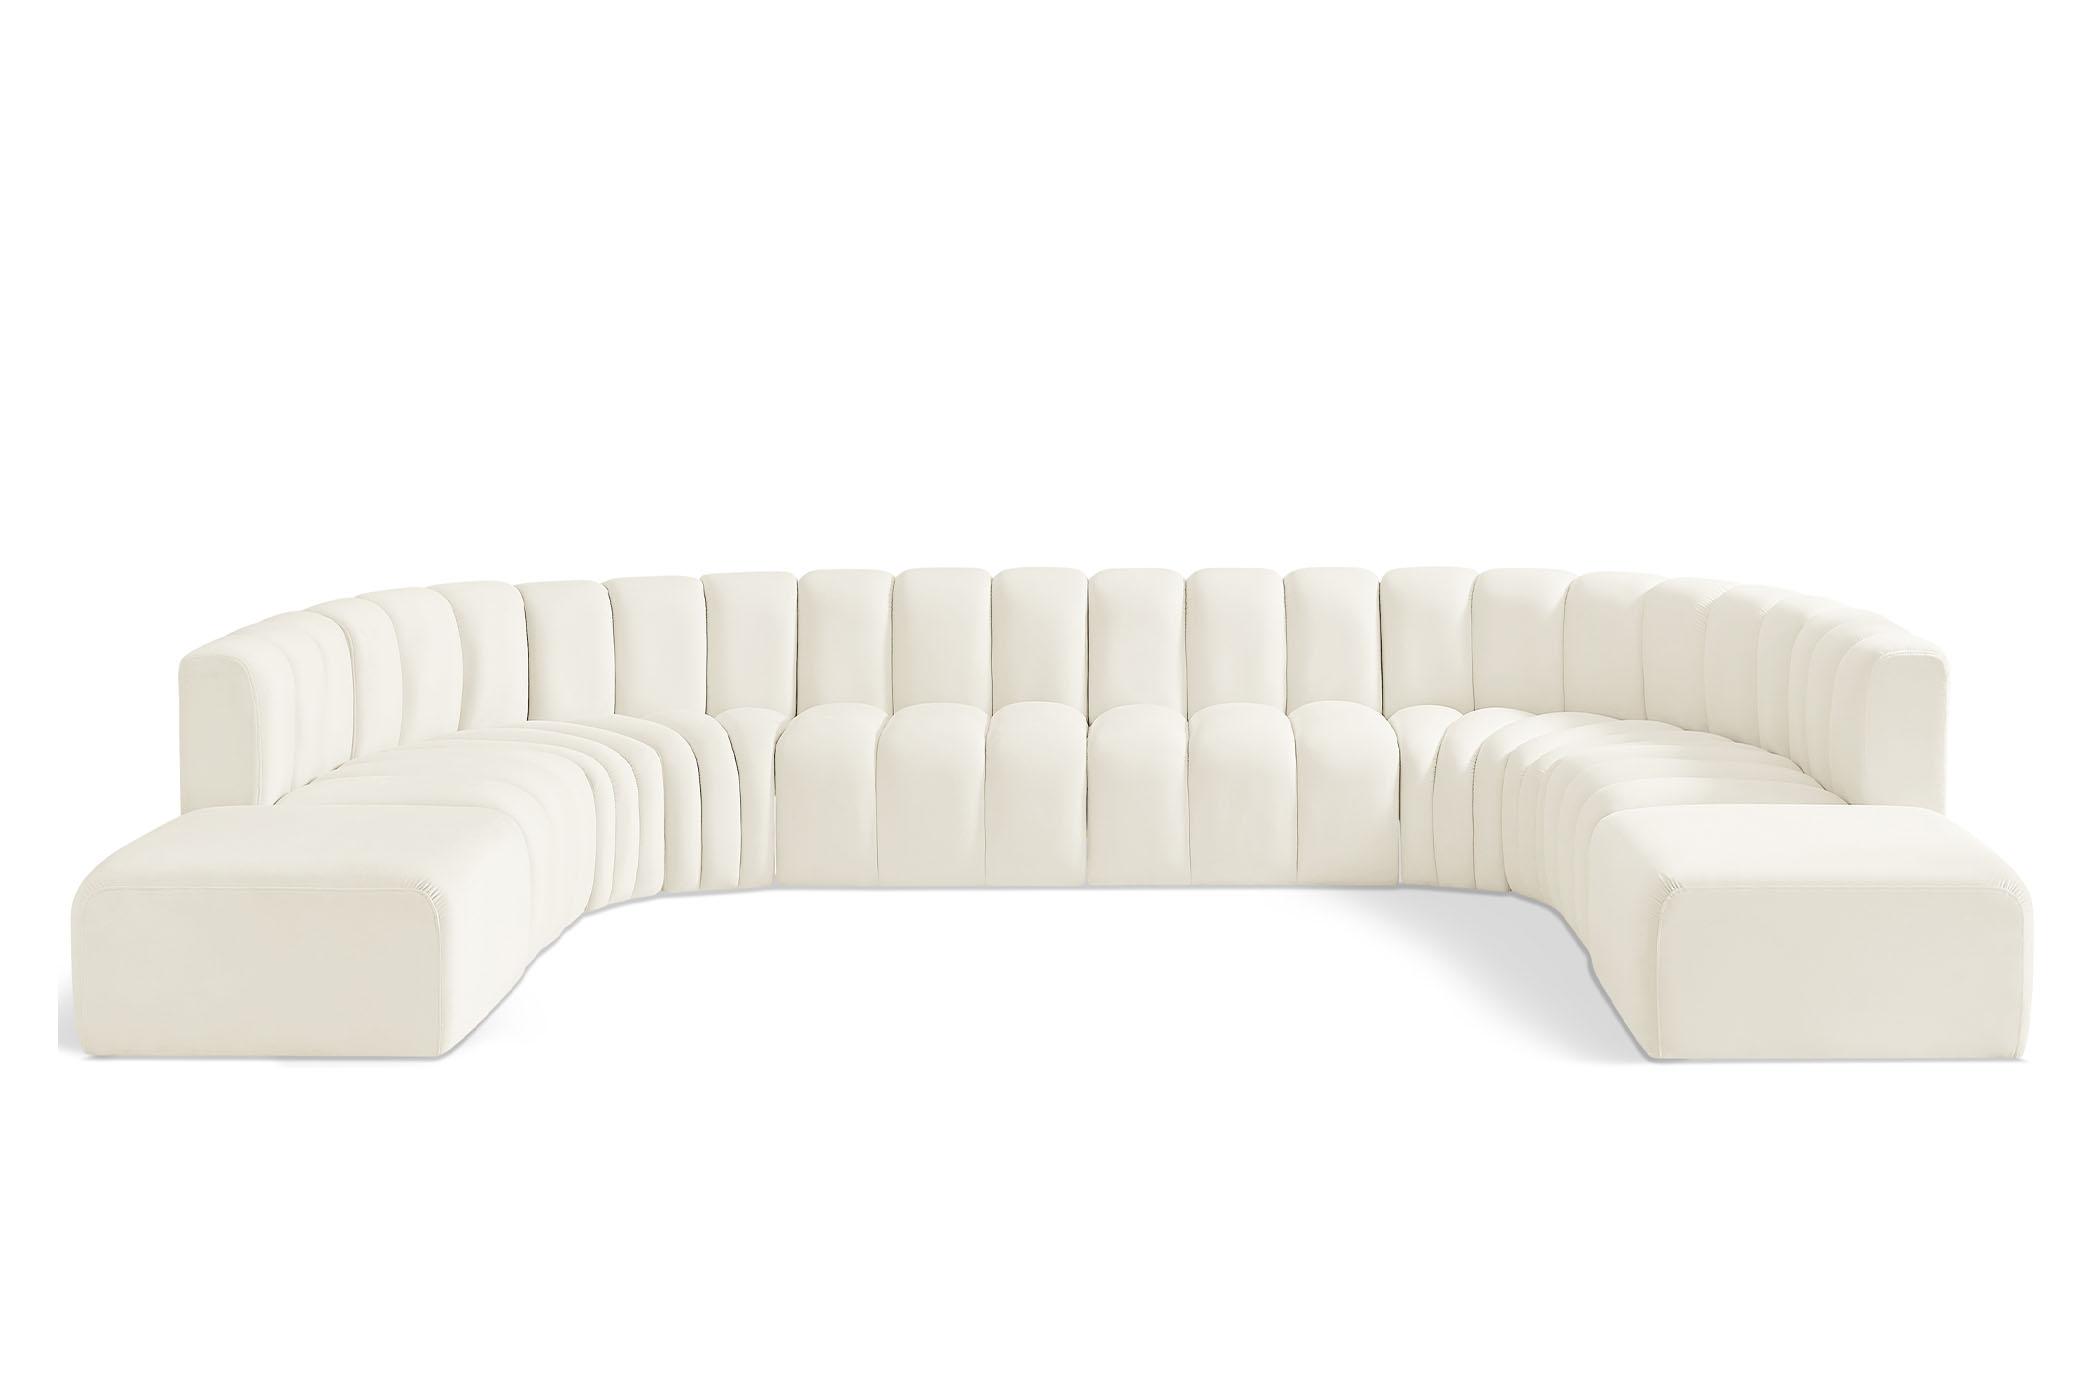 Contemporary, Modern Modular Sectional Sofa ARC 103Cream-S10A 103Cream-S10A in Cream Velvet